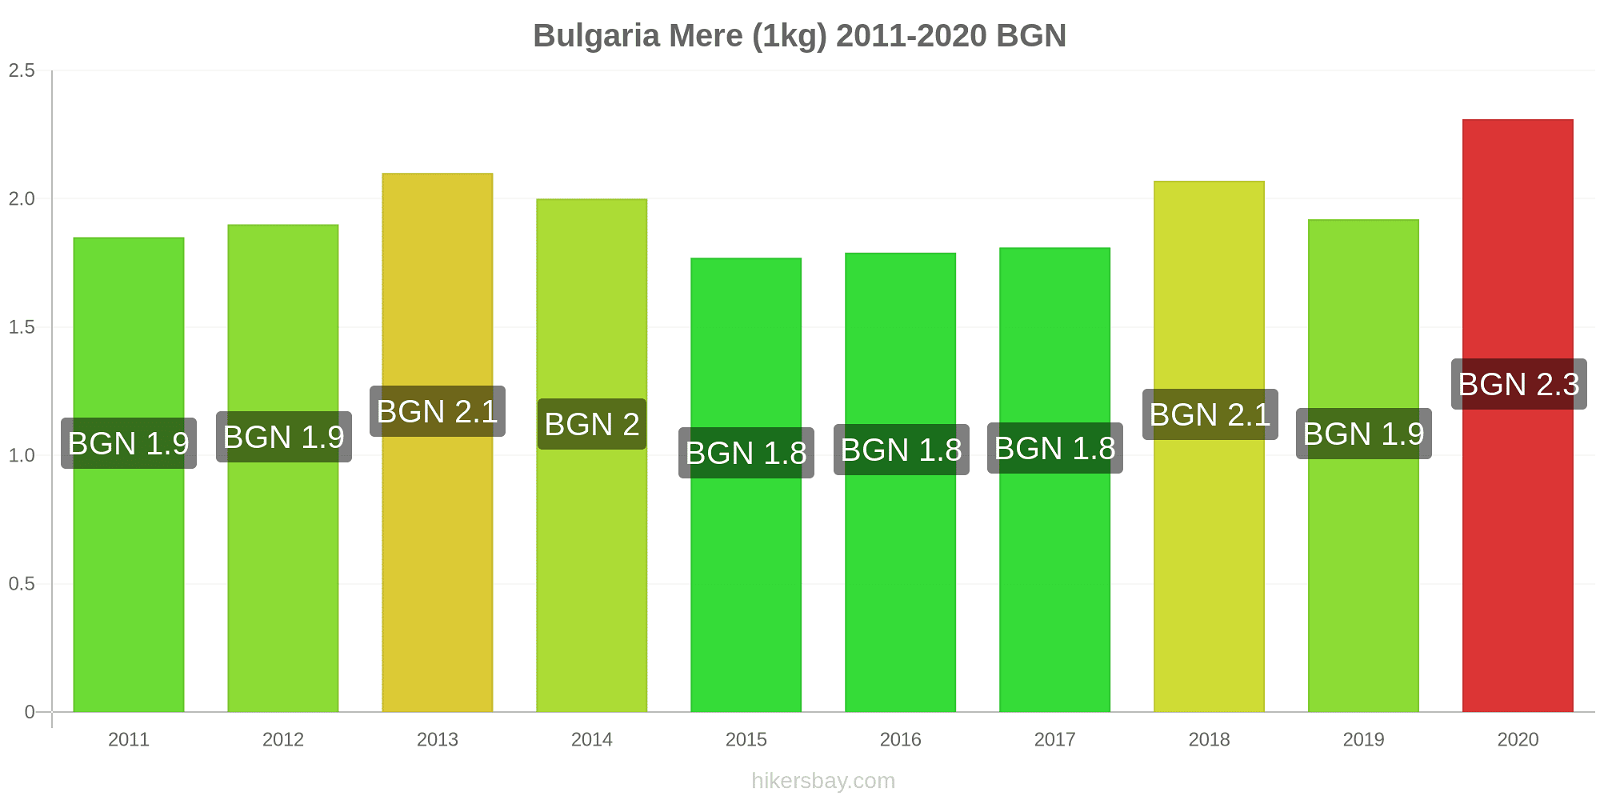 Bulgaria modificări de preț Mere (1kg) hikersbay.com